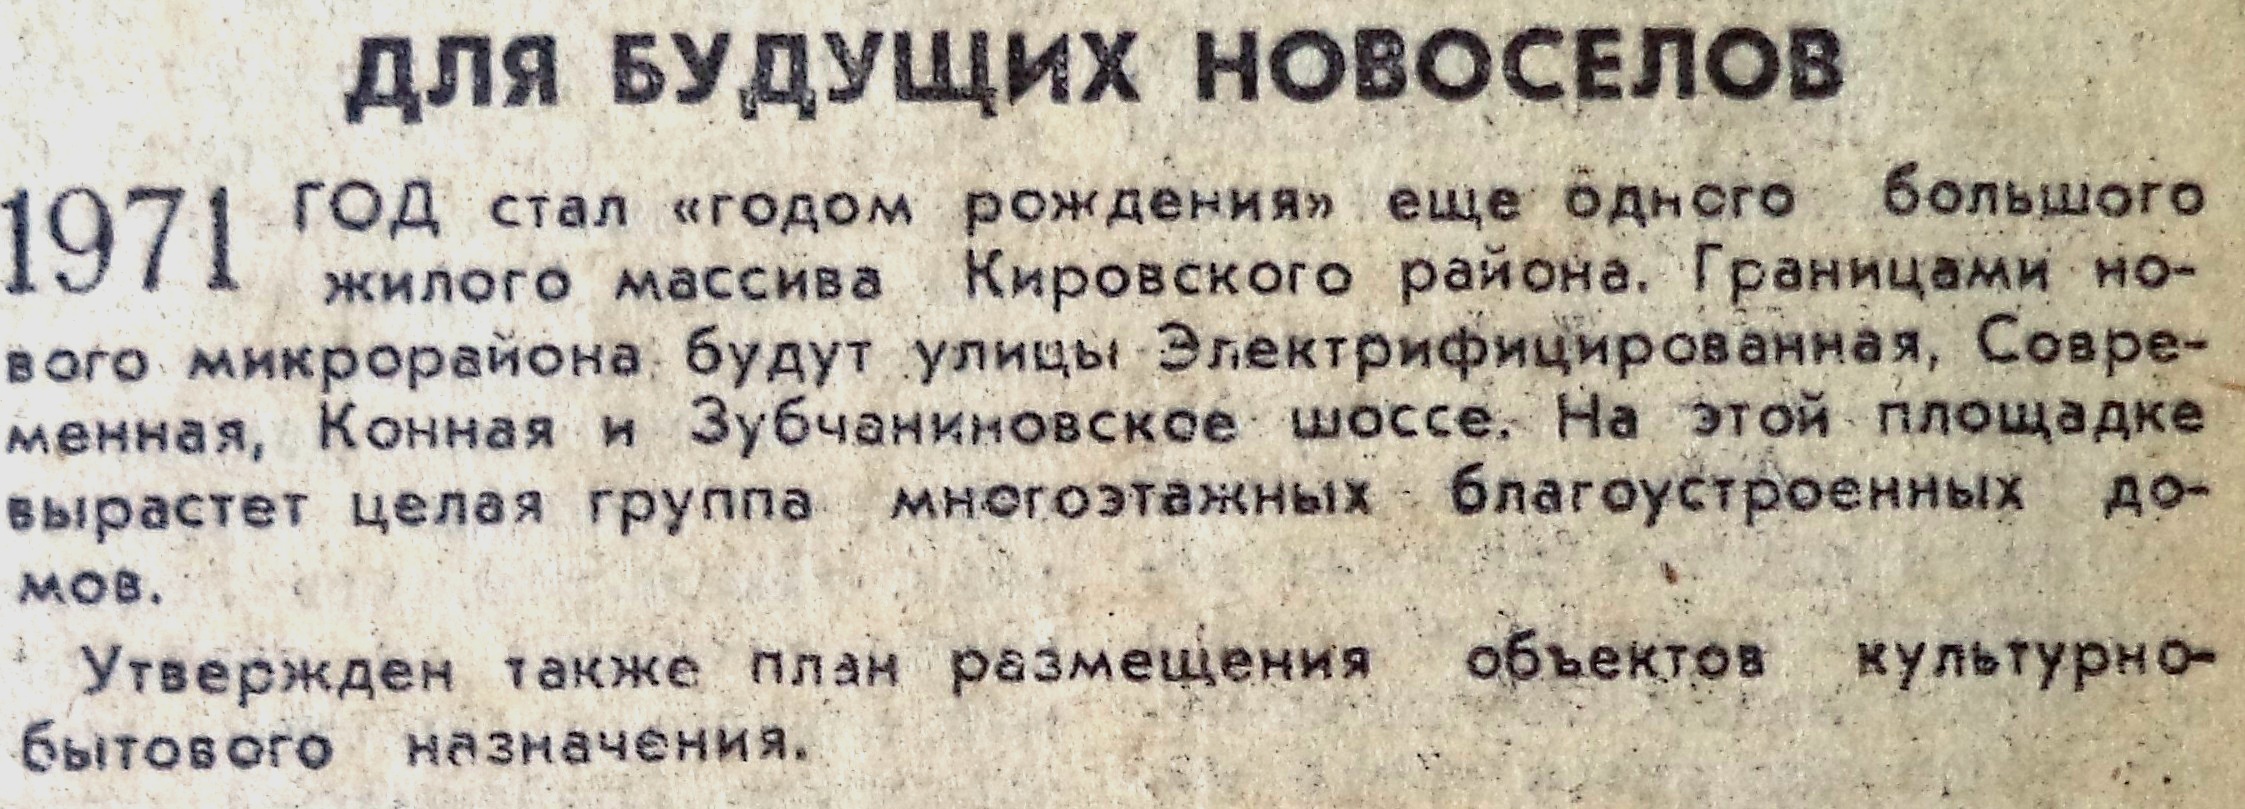 Зубчаниновское-ФОТО-25-ВЗя-1971-09-06-о Негритянском